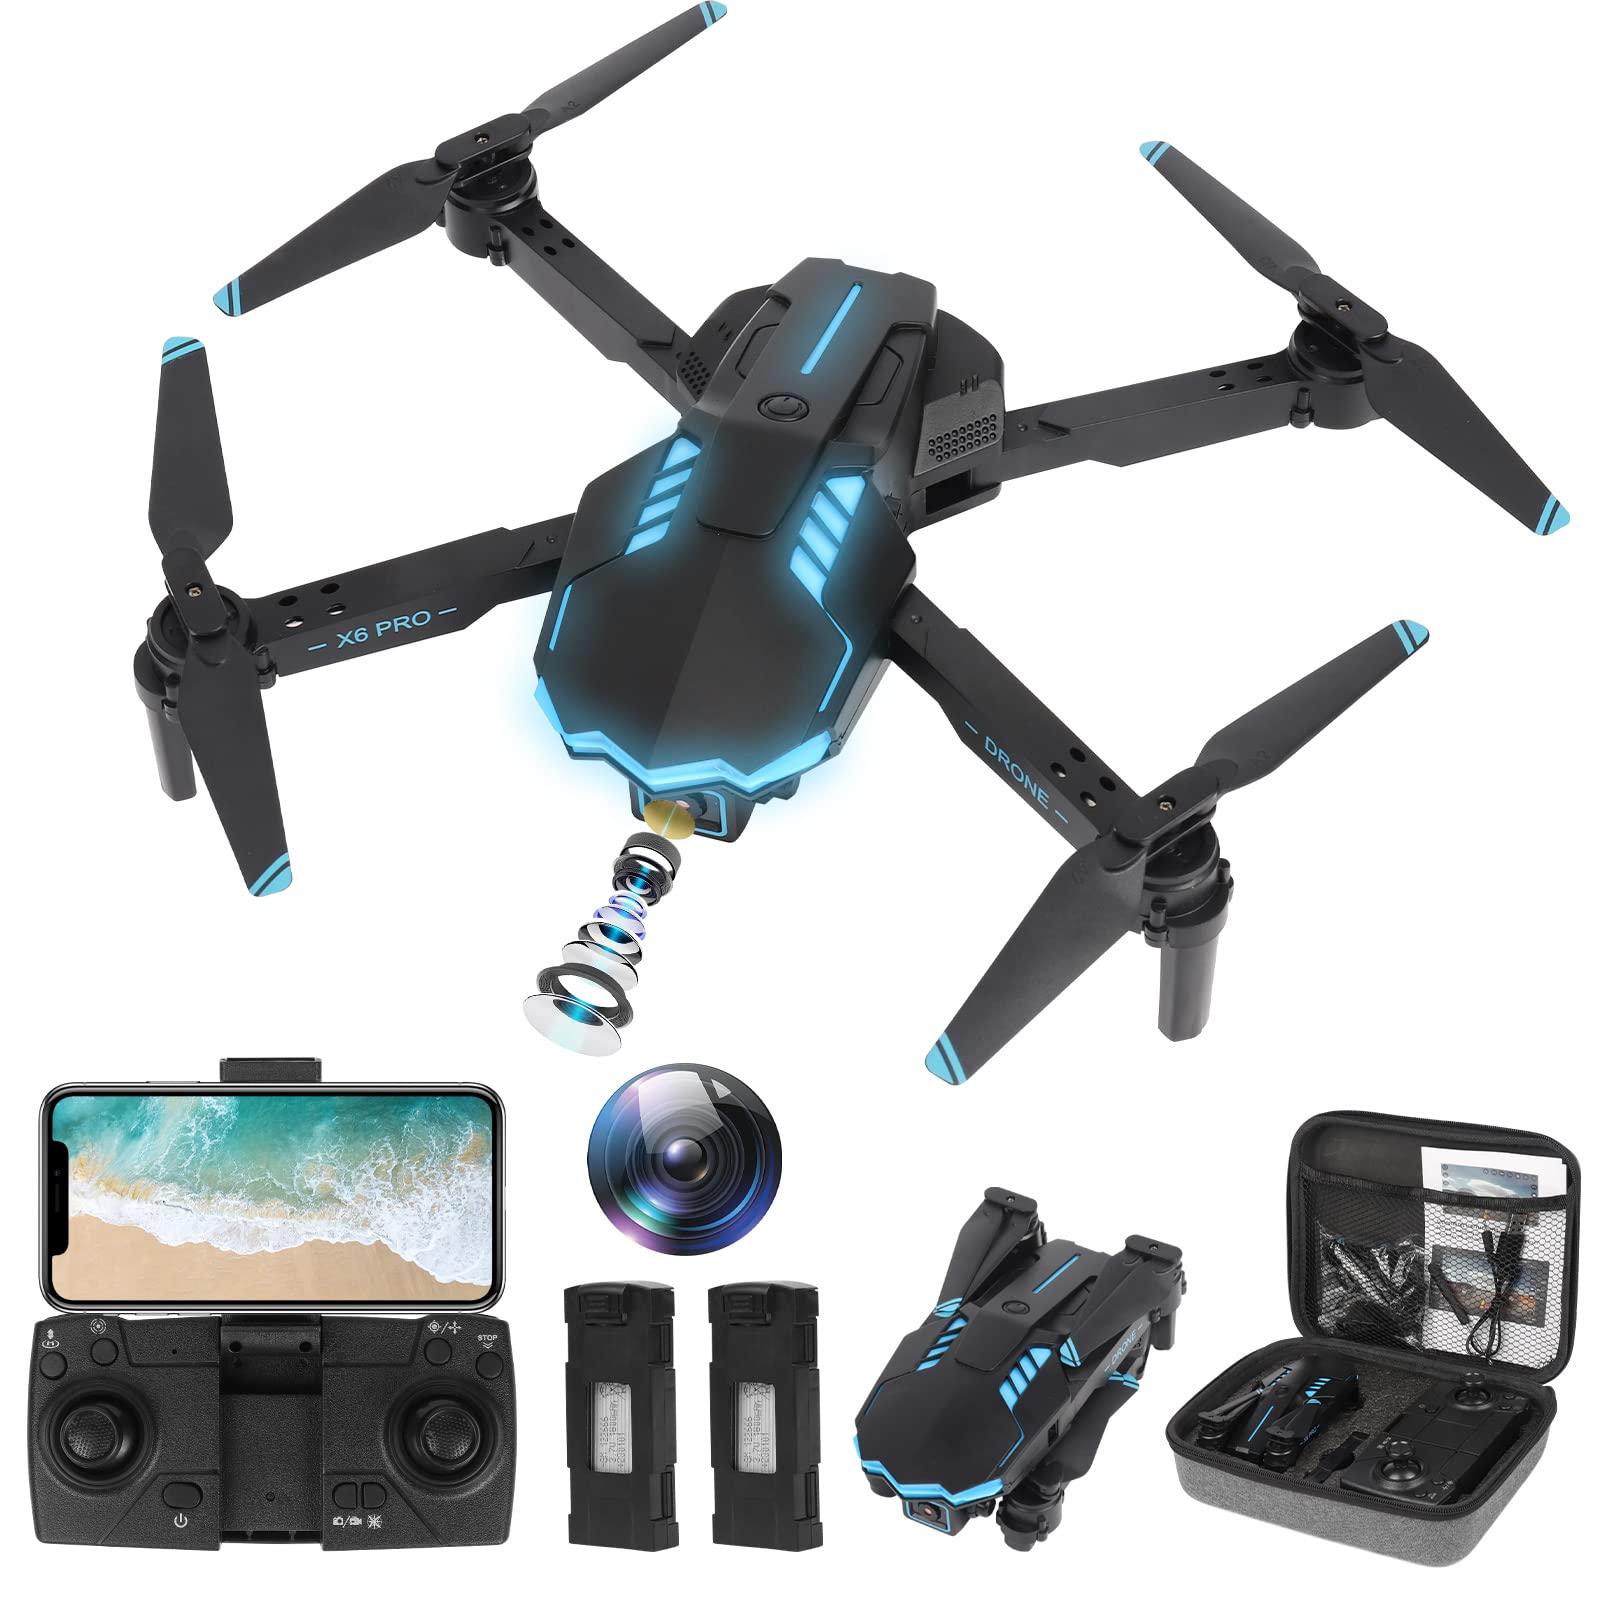 ZWOOS Drohne mit 720P Kamera,FPV Übertragung, RC Quadrocopter mit 10 Minuten Flugzeit,Automatische Hindernisvermeidung, geeignet für Anfänger